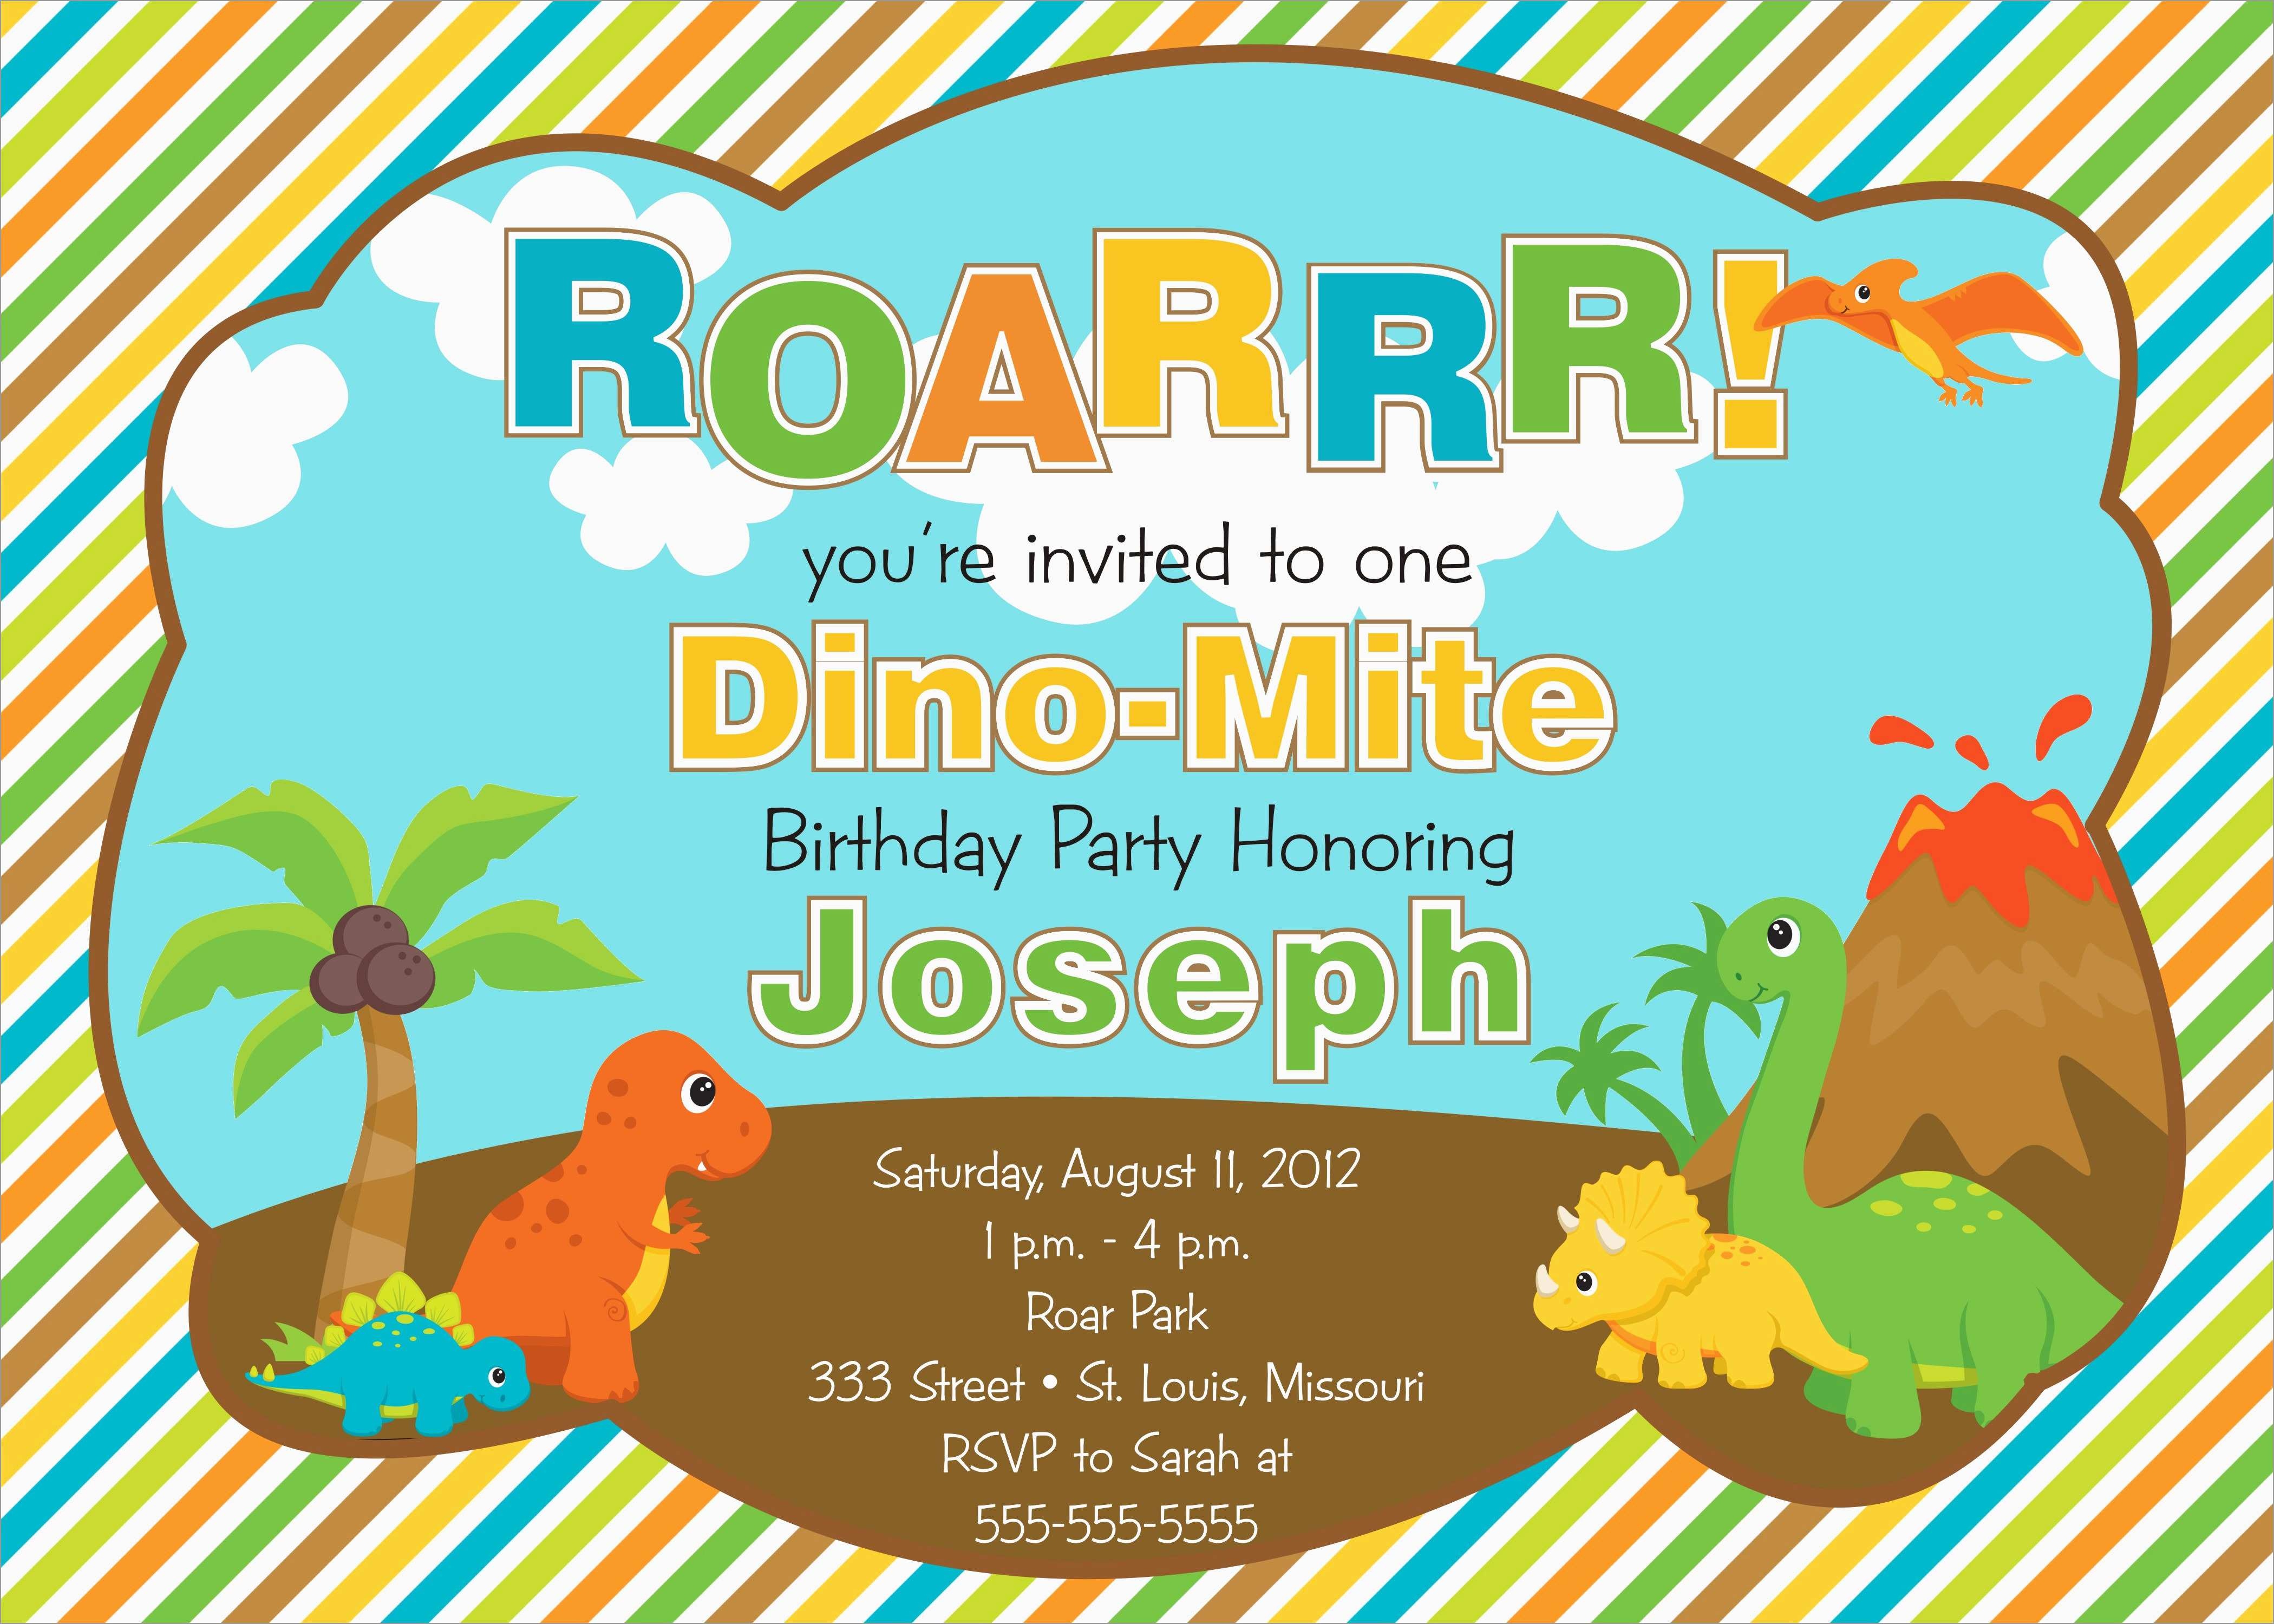 Lovely Dinosaur Birthday Invitation Template Free | Best Of Template - Free Printable Dinosaur Birthday Invitations